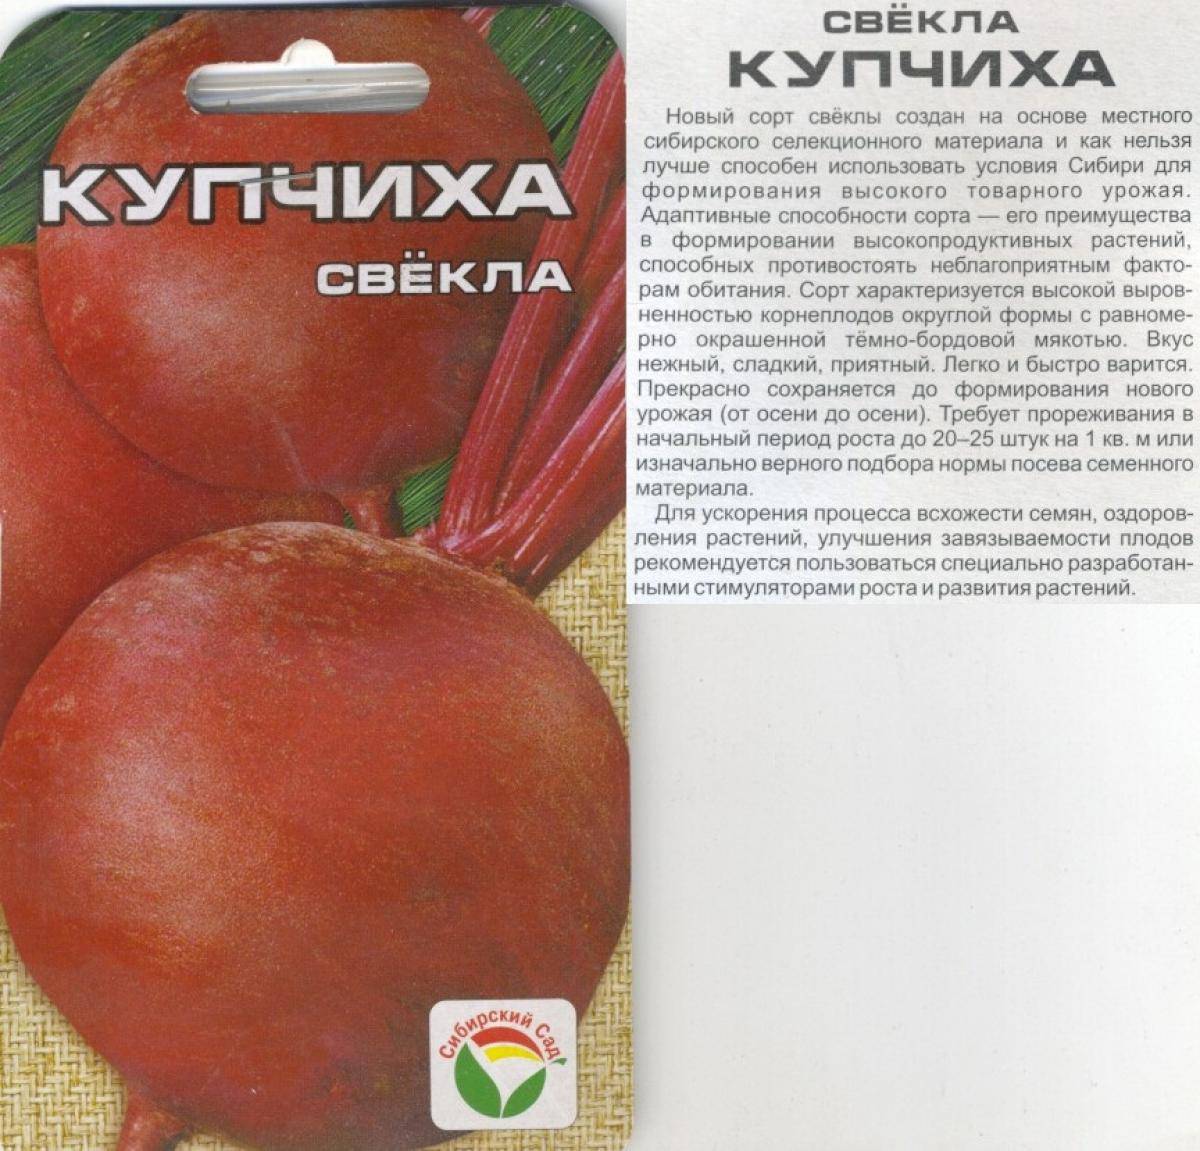 Испытано в сибири - 27 лучших сортов томатов